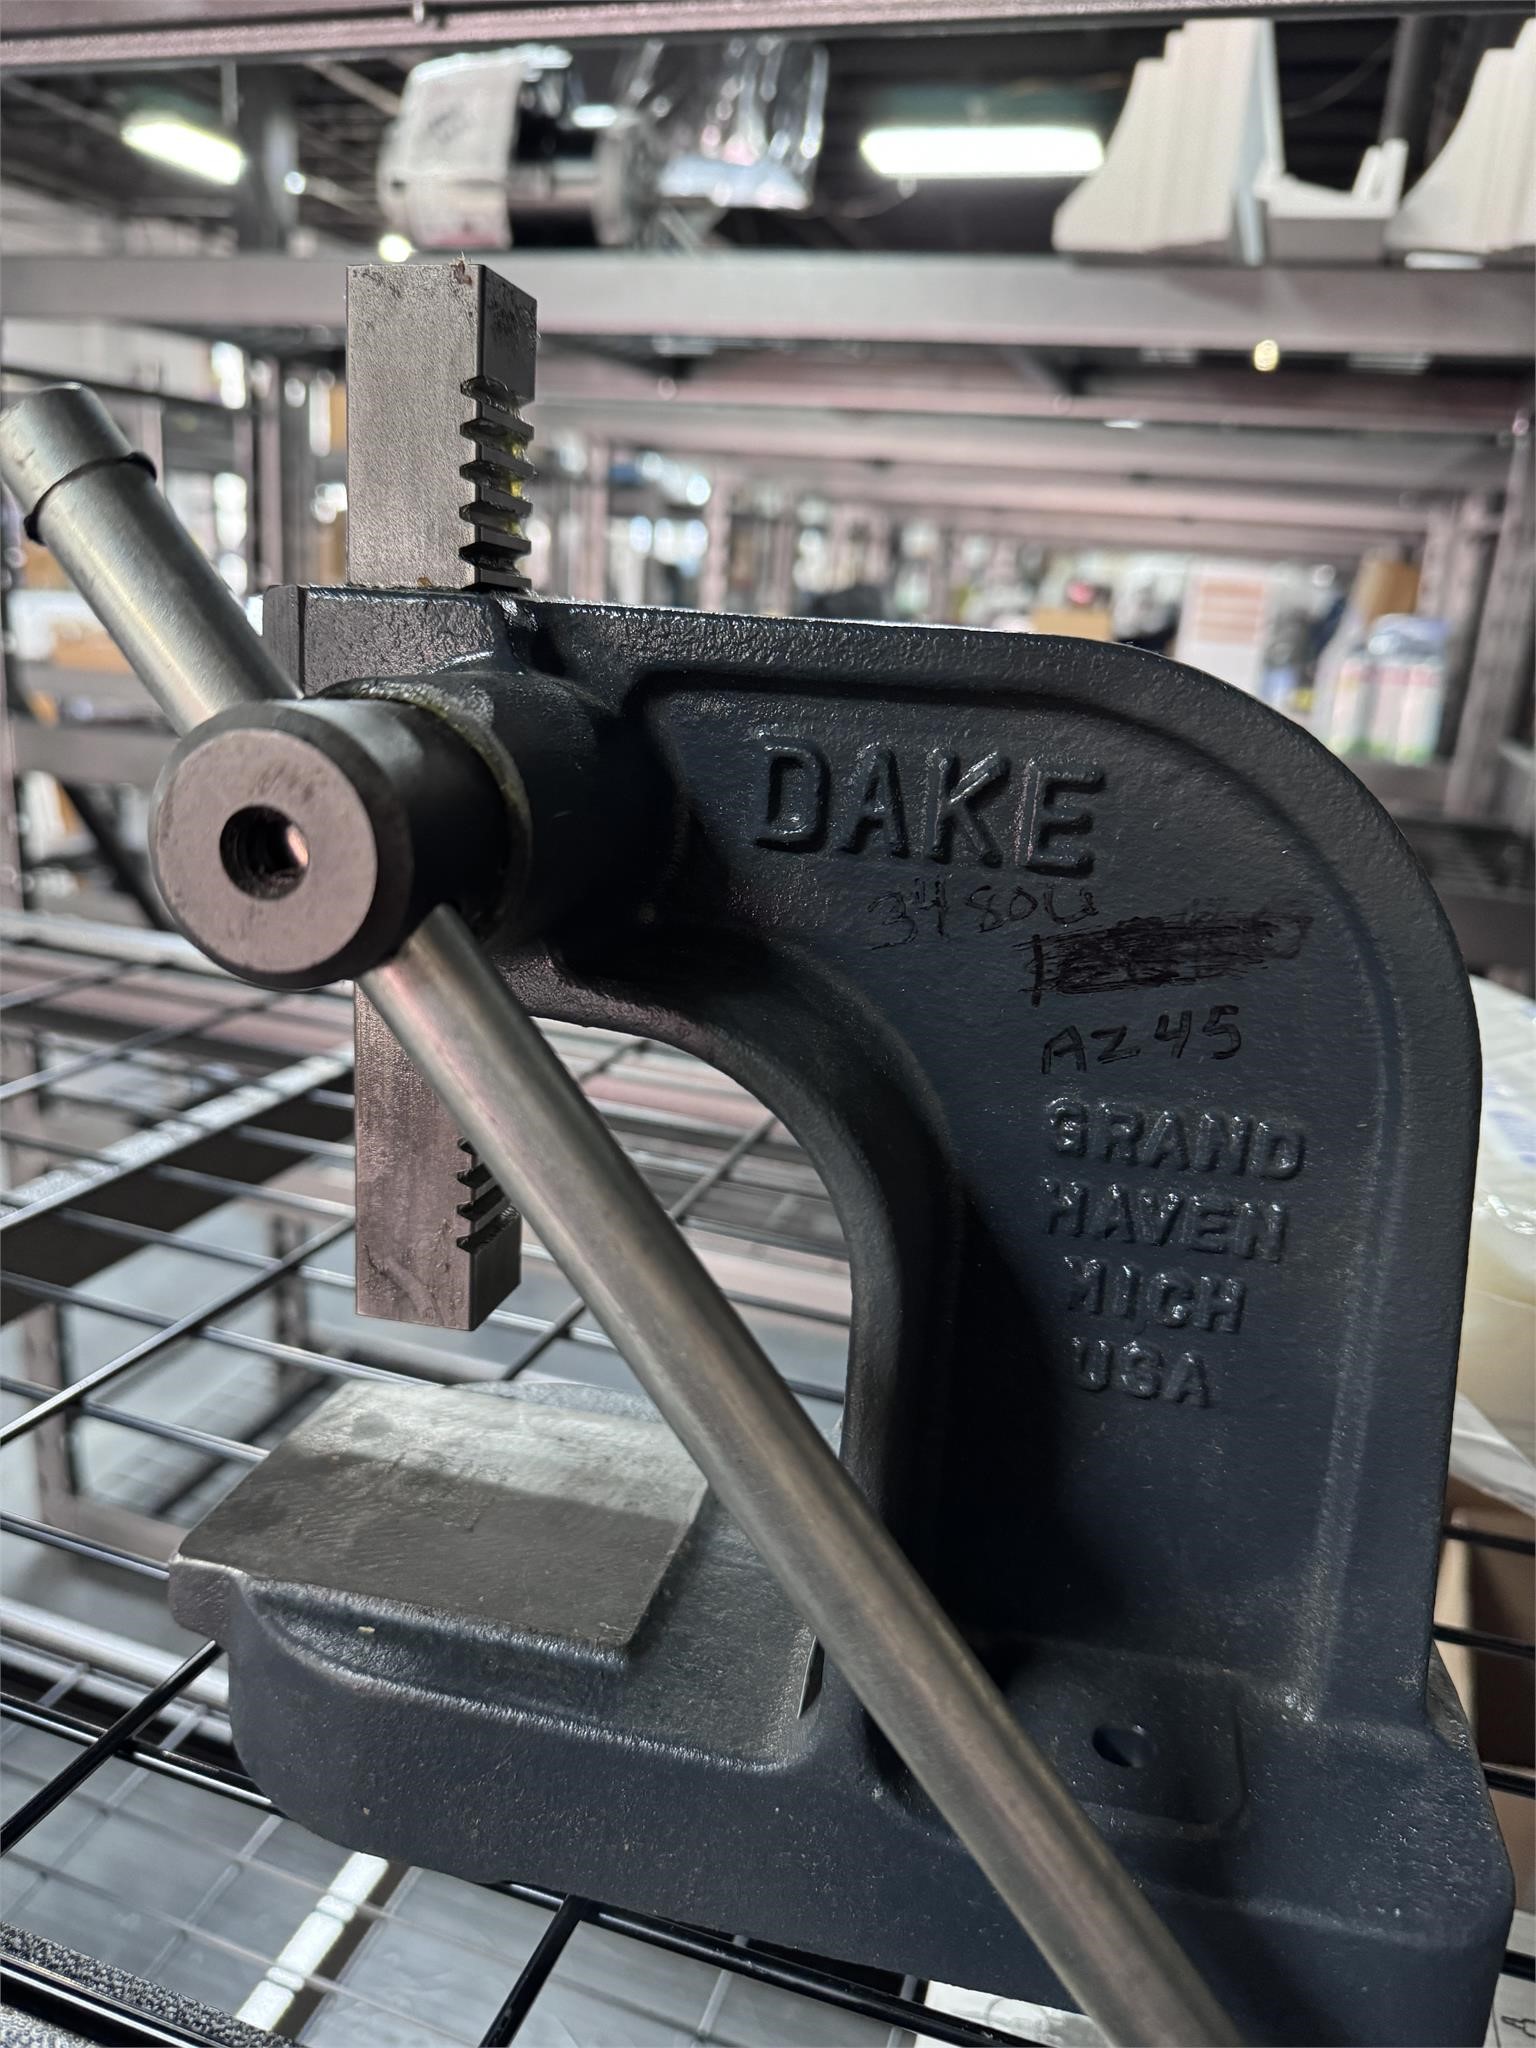 Dake Arbor Press, 1 Ton AZ45